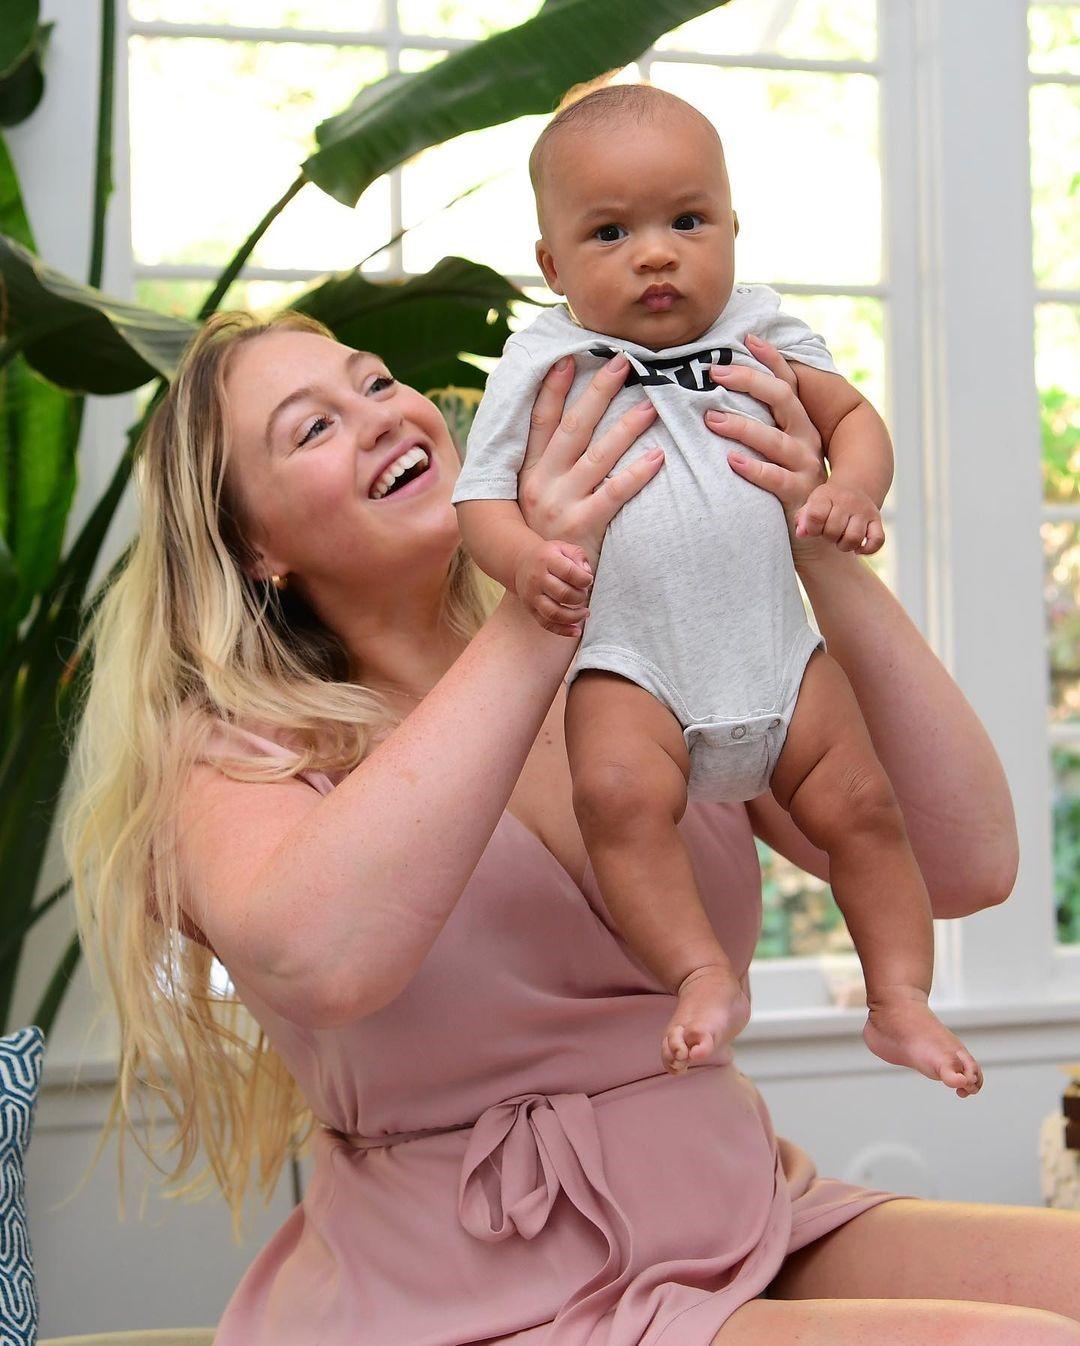 Plus-size модель Искра Лоуренс о том, как её изменило материнство: «Я способна на большее, чем когда-либо»